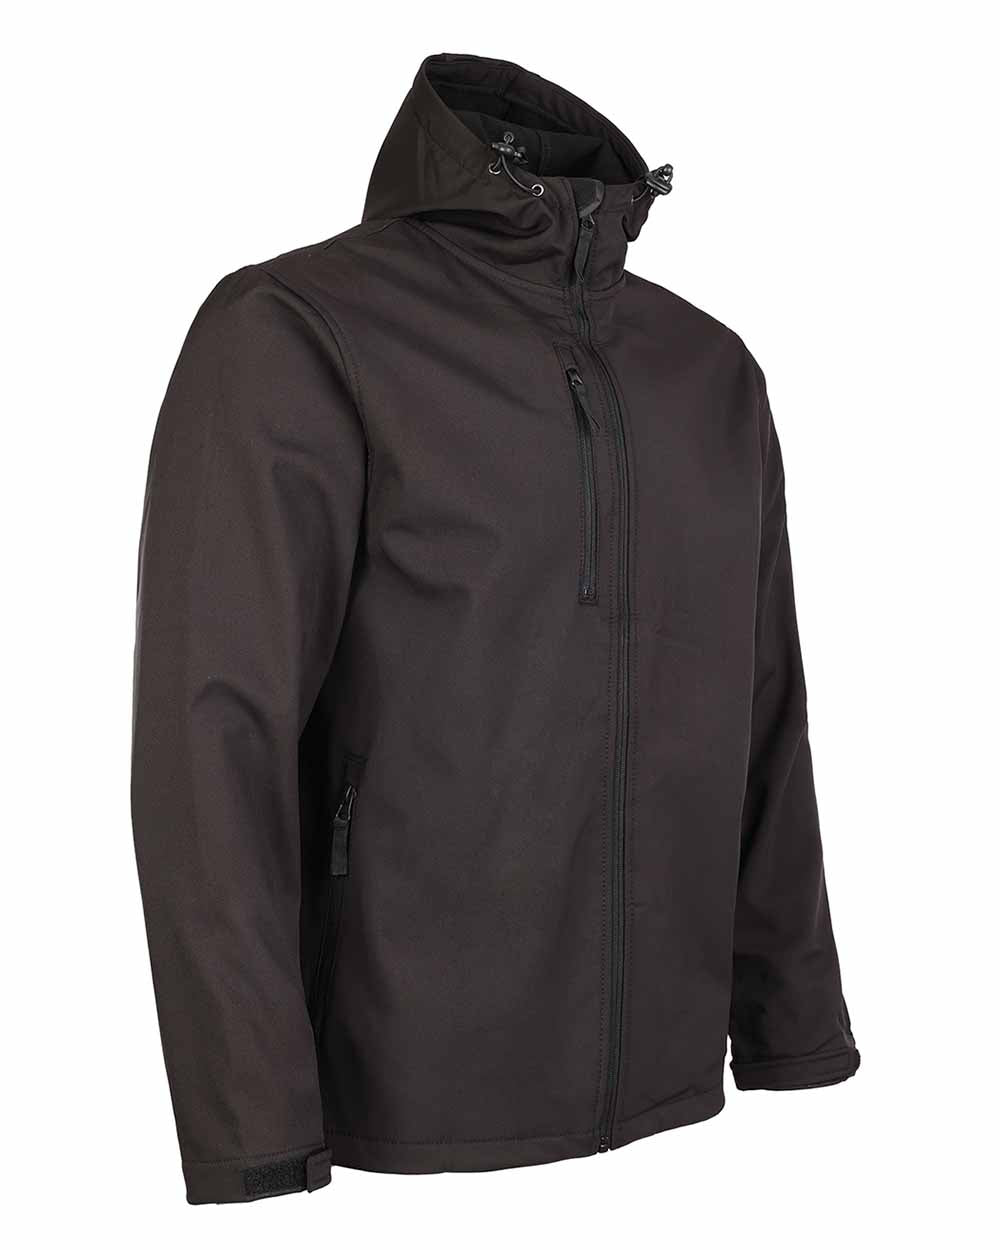 Zipped pocket Black Fort Holkham Hooded Softshell Jacket  